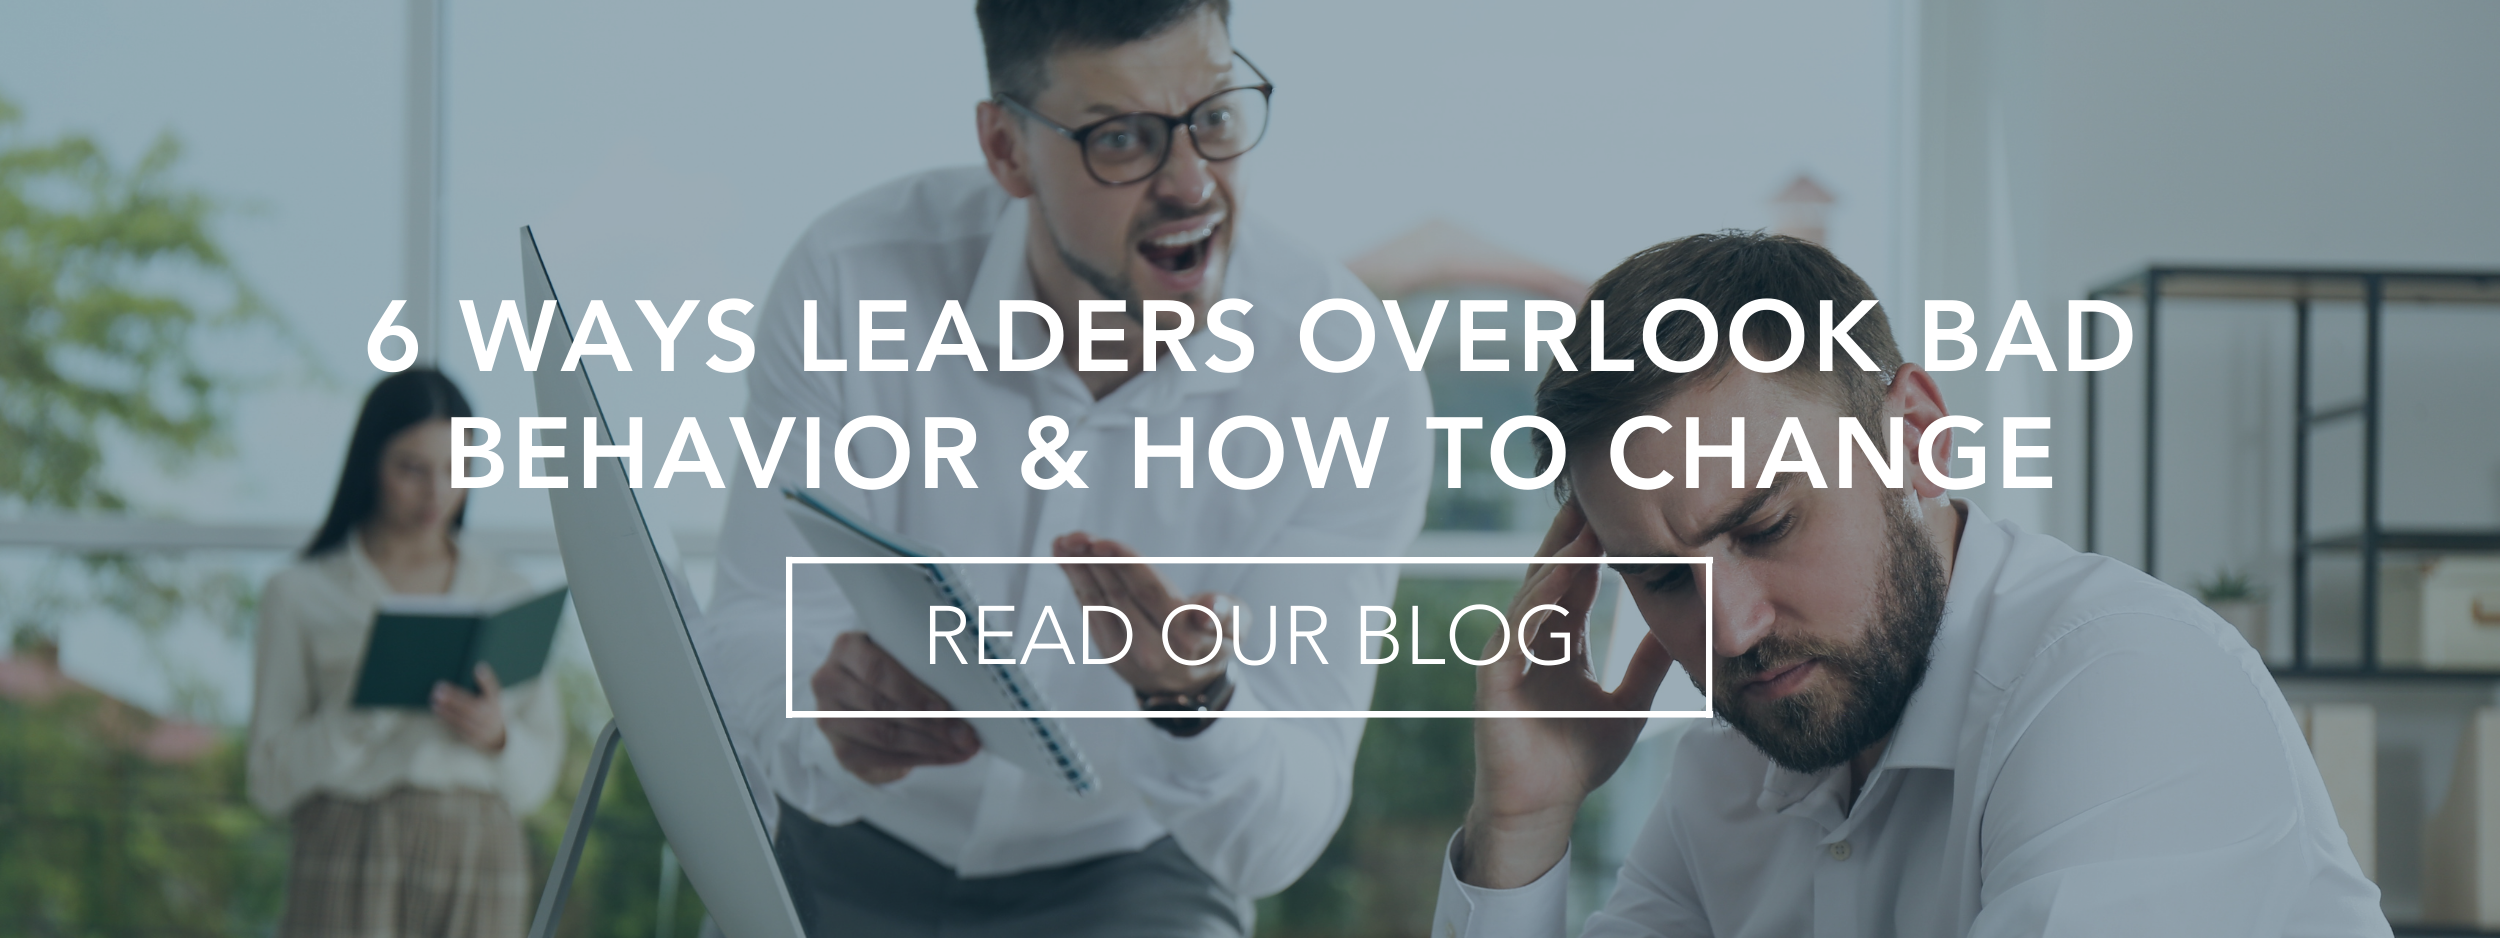 6 Ways Leaders Overlook Bad Behavior and How to Change website.png